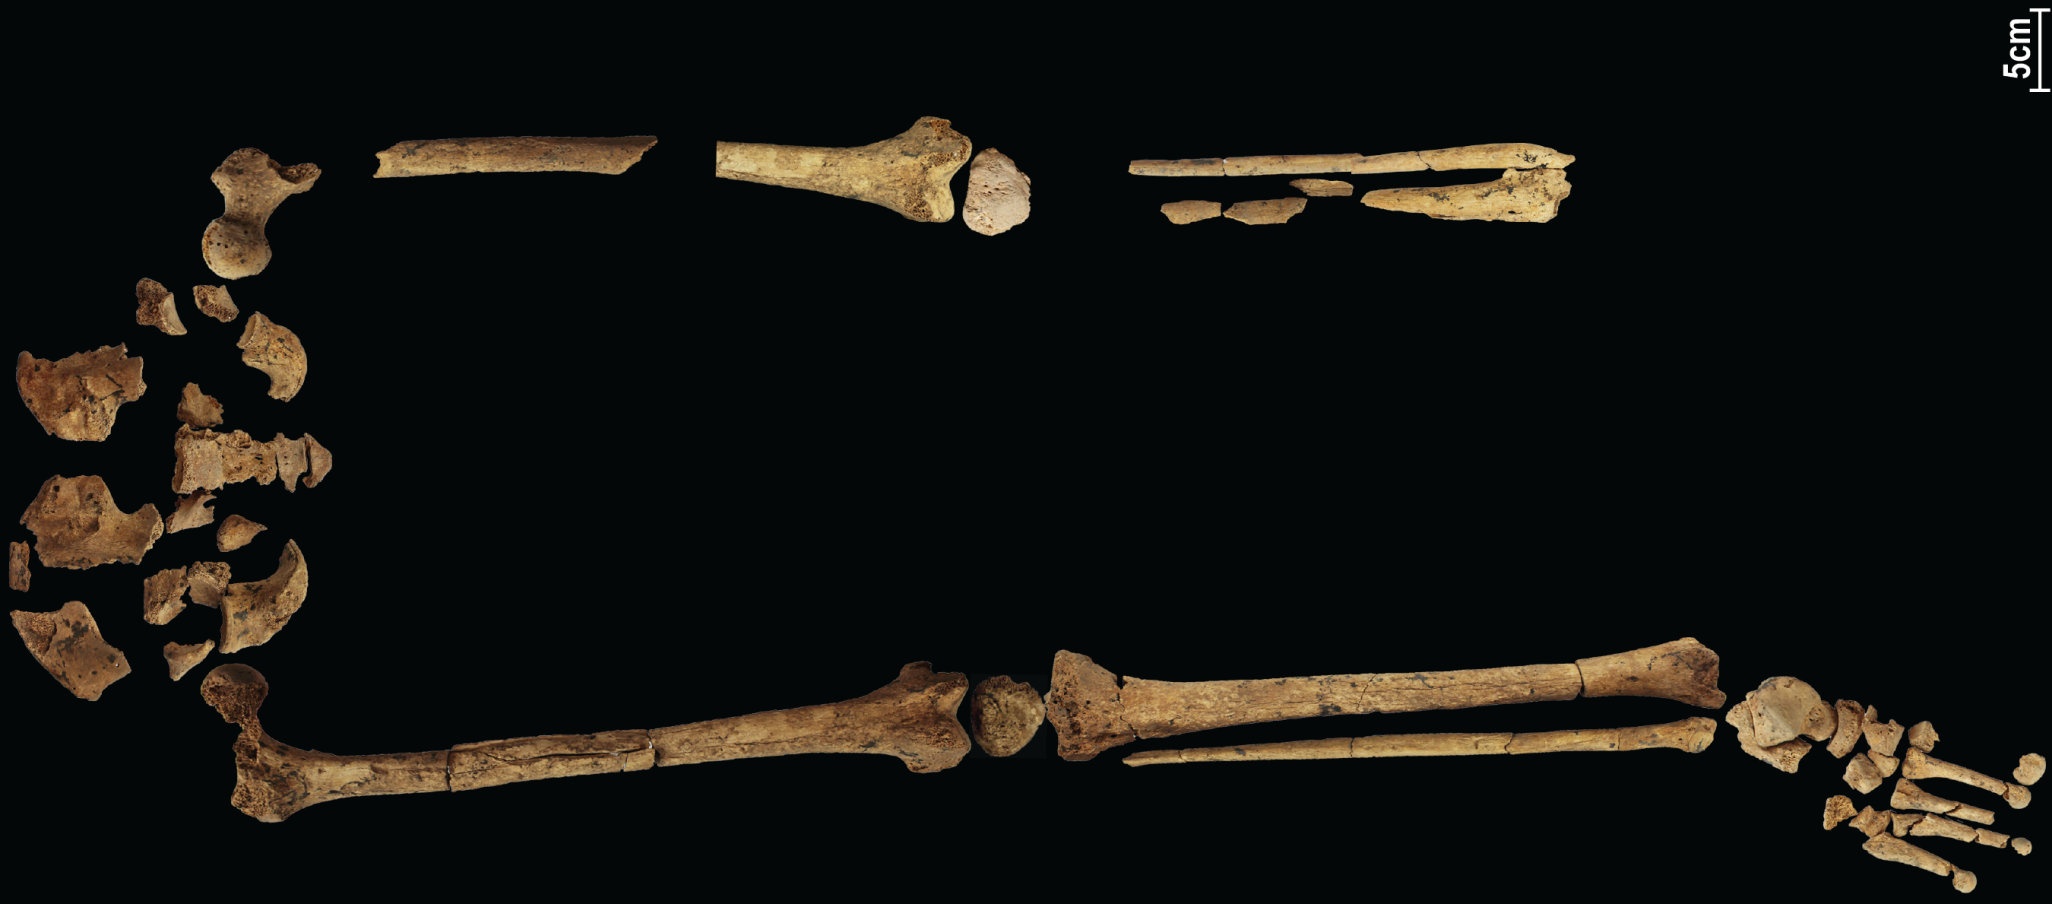 Kerangka berusia 31,000 tahun yang menunjukkan operasi kompleks paling awal yang diketahui dapat menulis ulang sejarah! 4